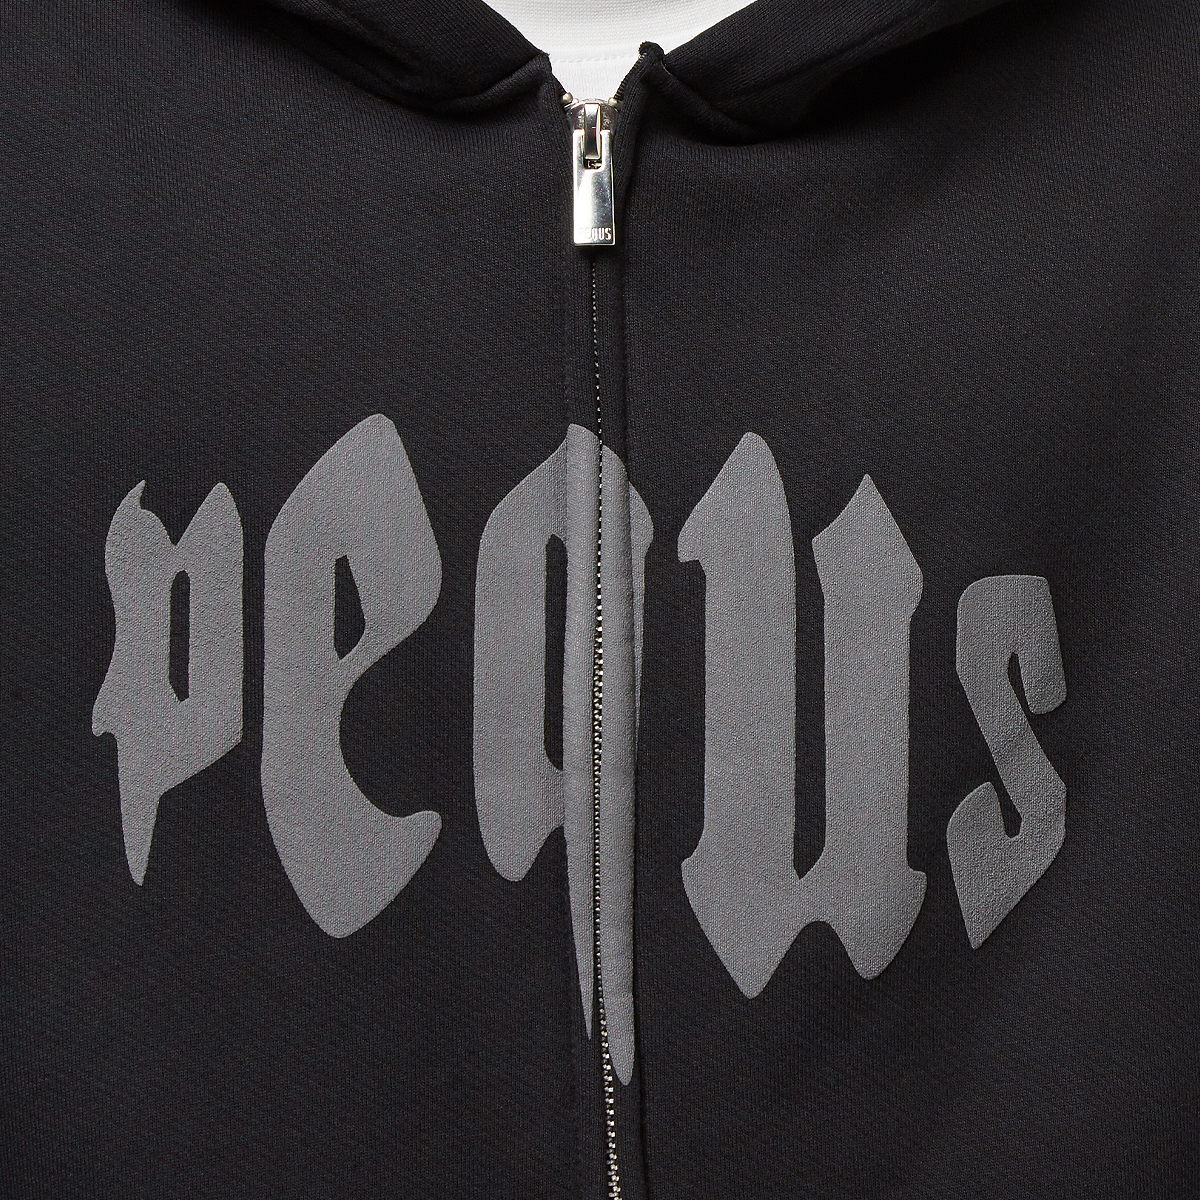 Pequs Mythic Zip-hoodie Hooded vesten Kleding Black maat: L beschikbare maaten:M L